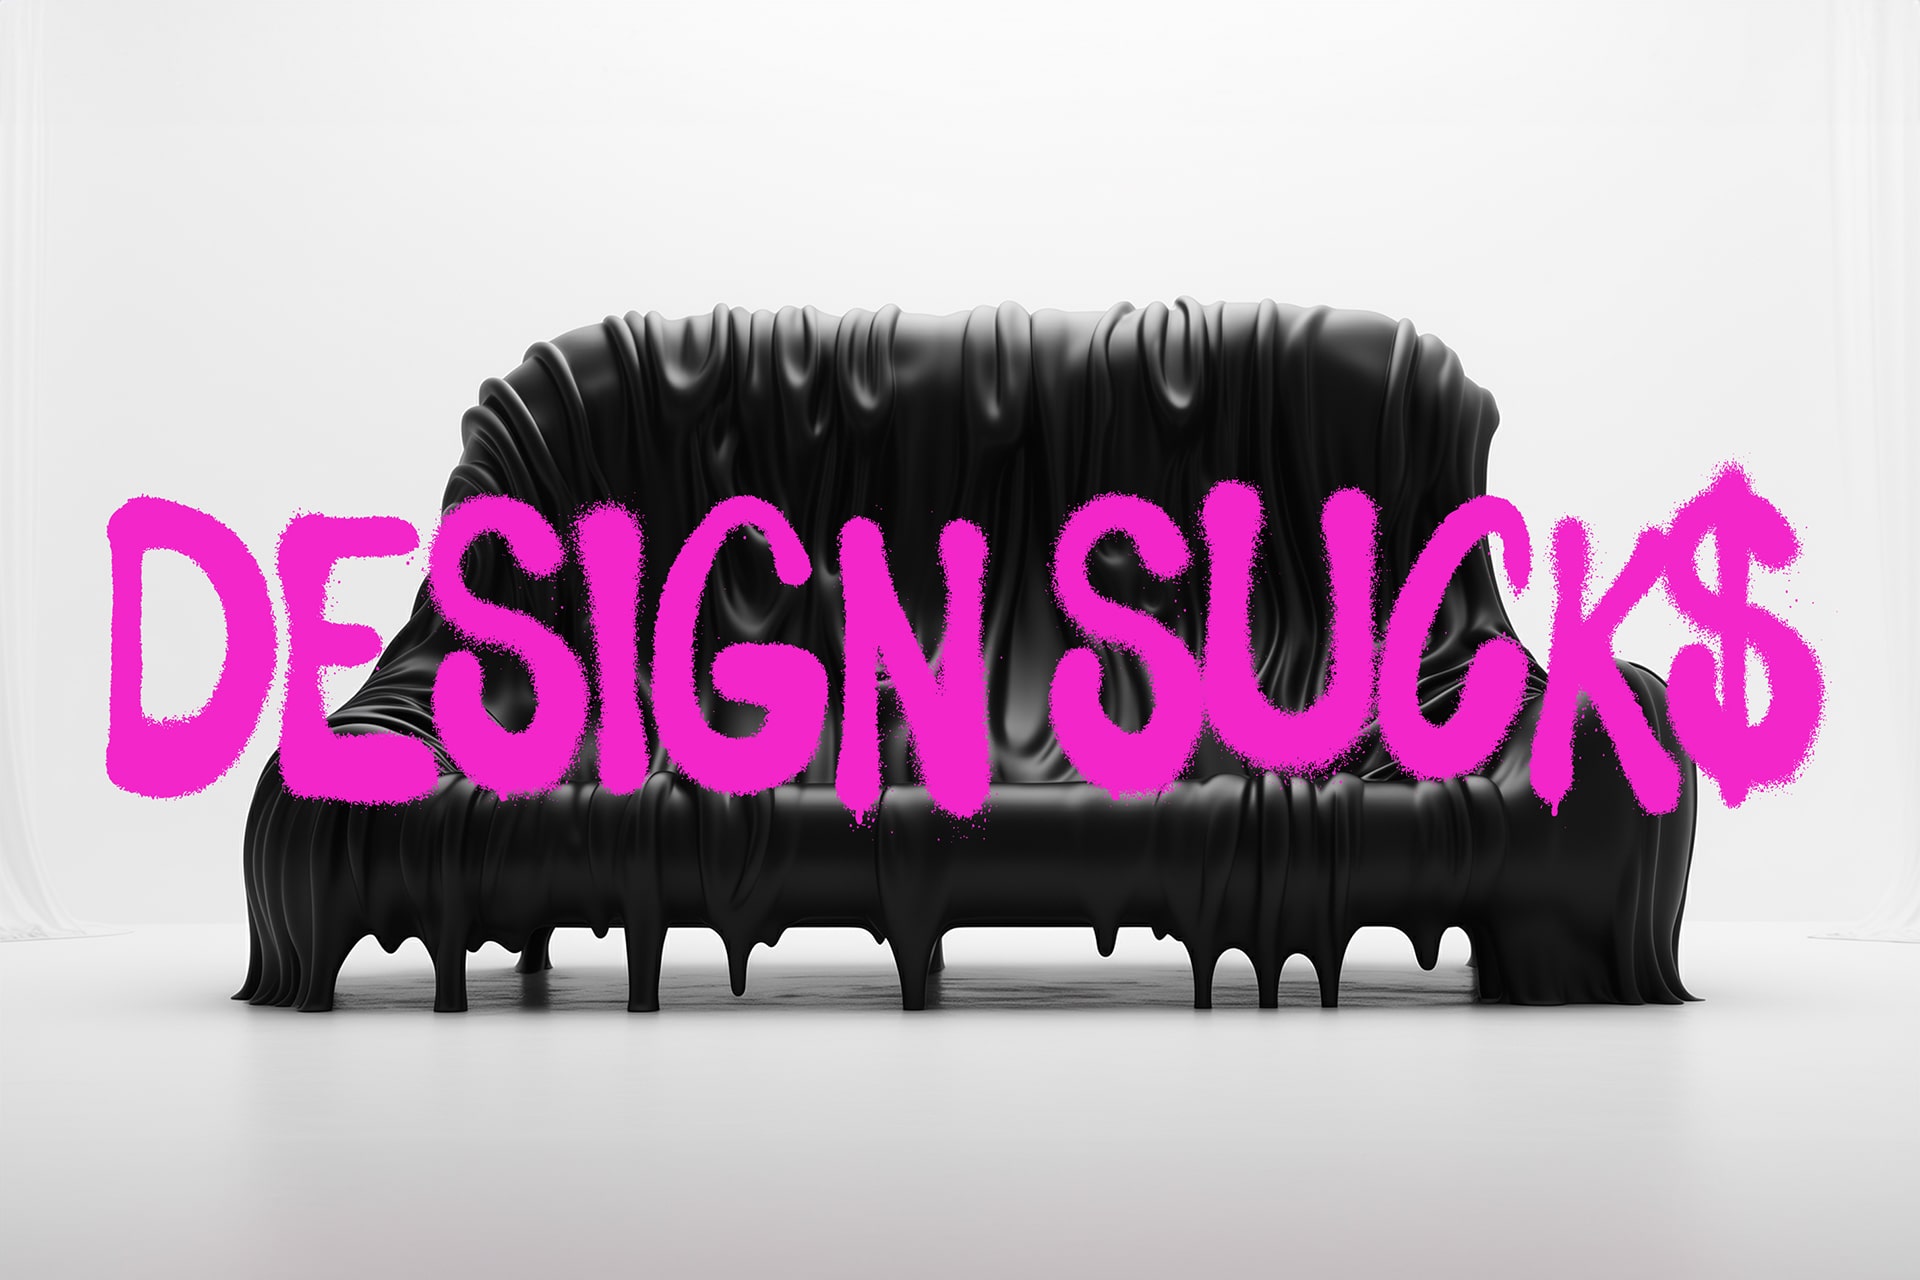 Design Suck$